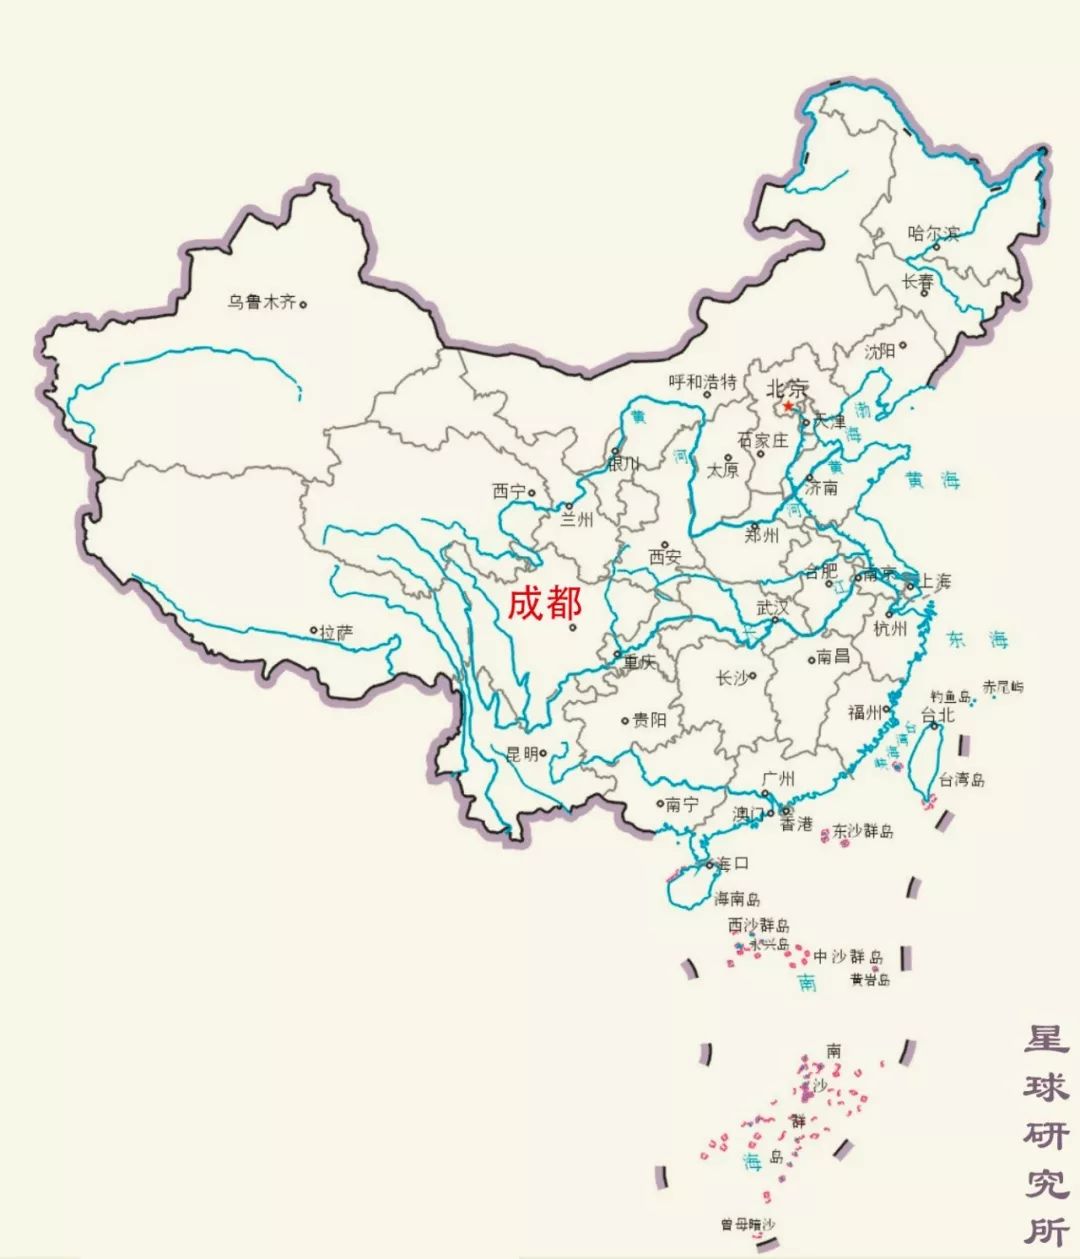 发达的长江水道 没有重庆等沿江城市水运交通的优势 (成都位置示意图